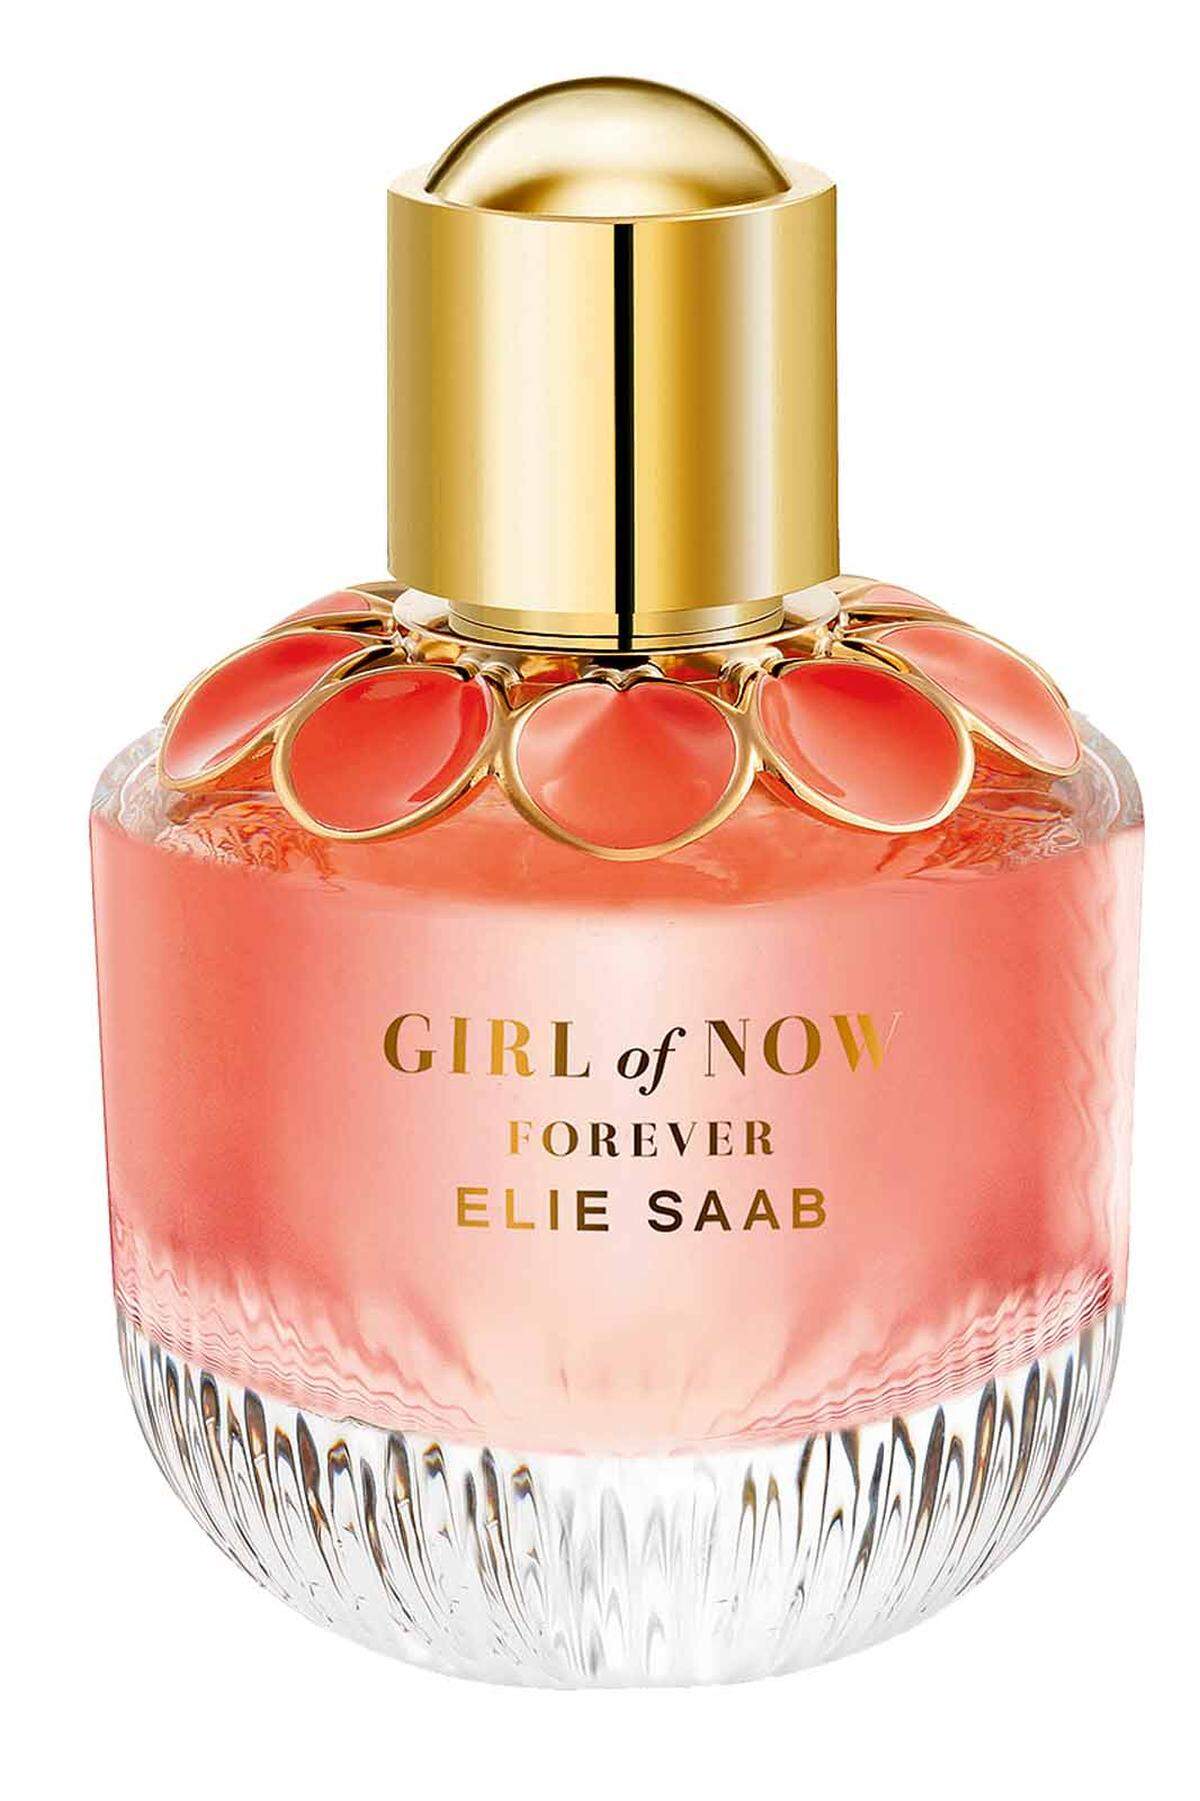 Damenduft „Girl of Now Forever“ von Elie Saab als blumige Ode an südliche Urlaubsstimmung, 50 ml Eau de ­Parfum um 80 Euro, ab Februar im Fachhandel erhältlich.